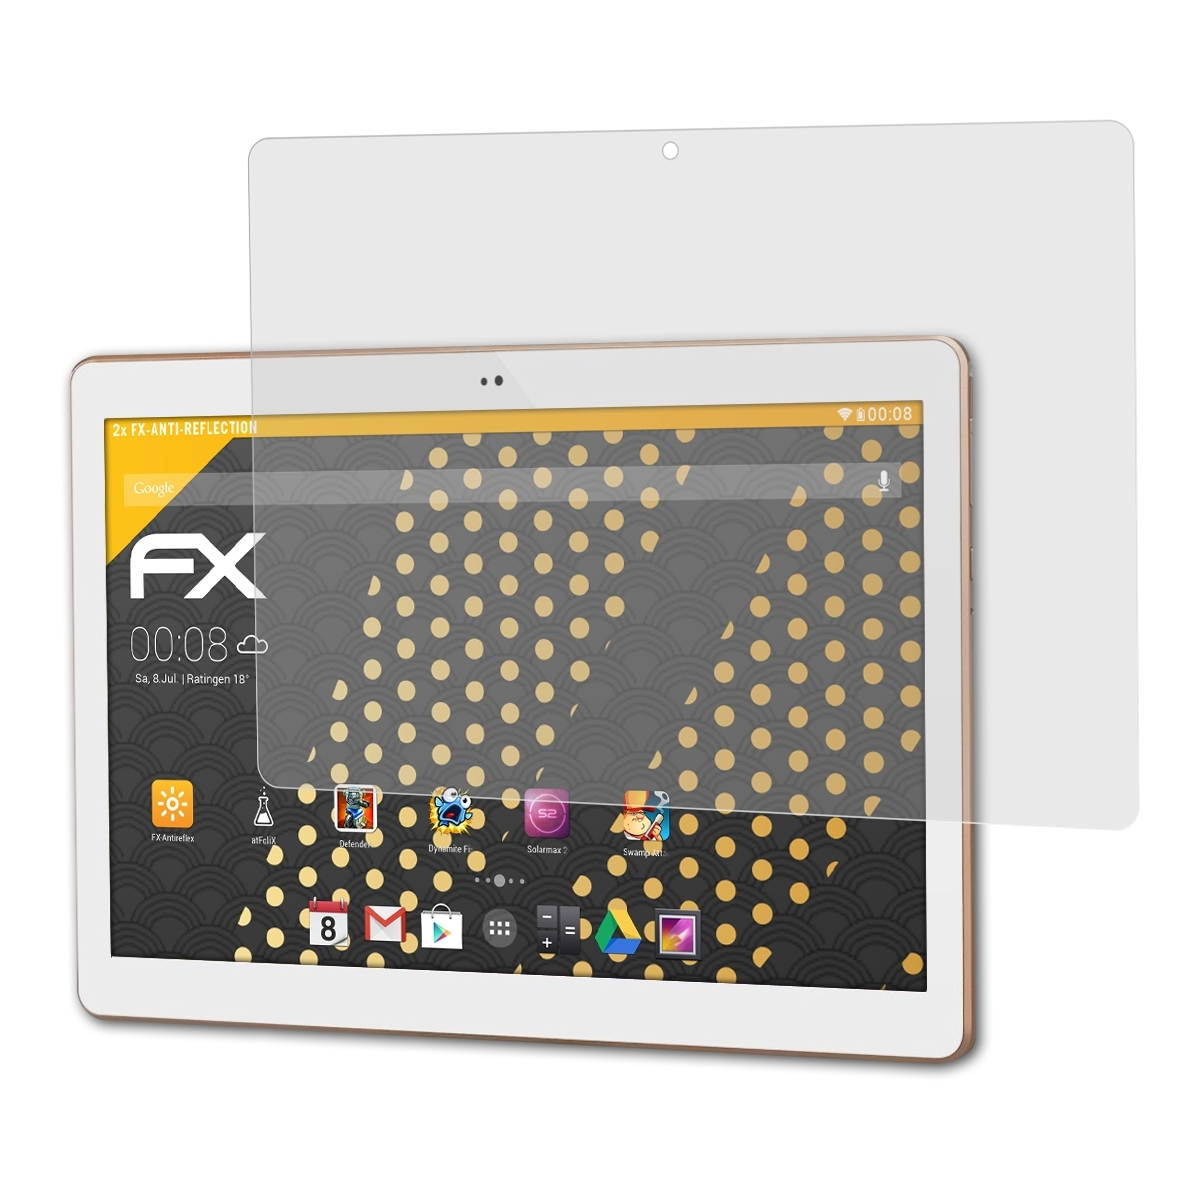 Acepad 2x Displayschutz(für FX-Antireflex ATFOLIX A101)